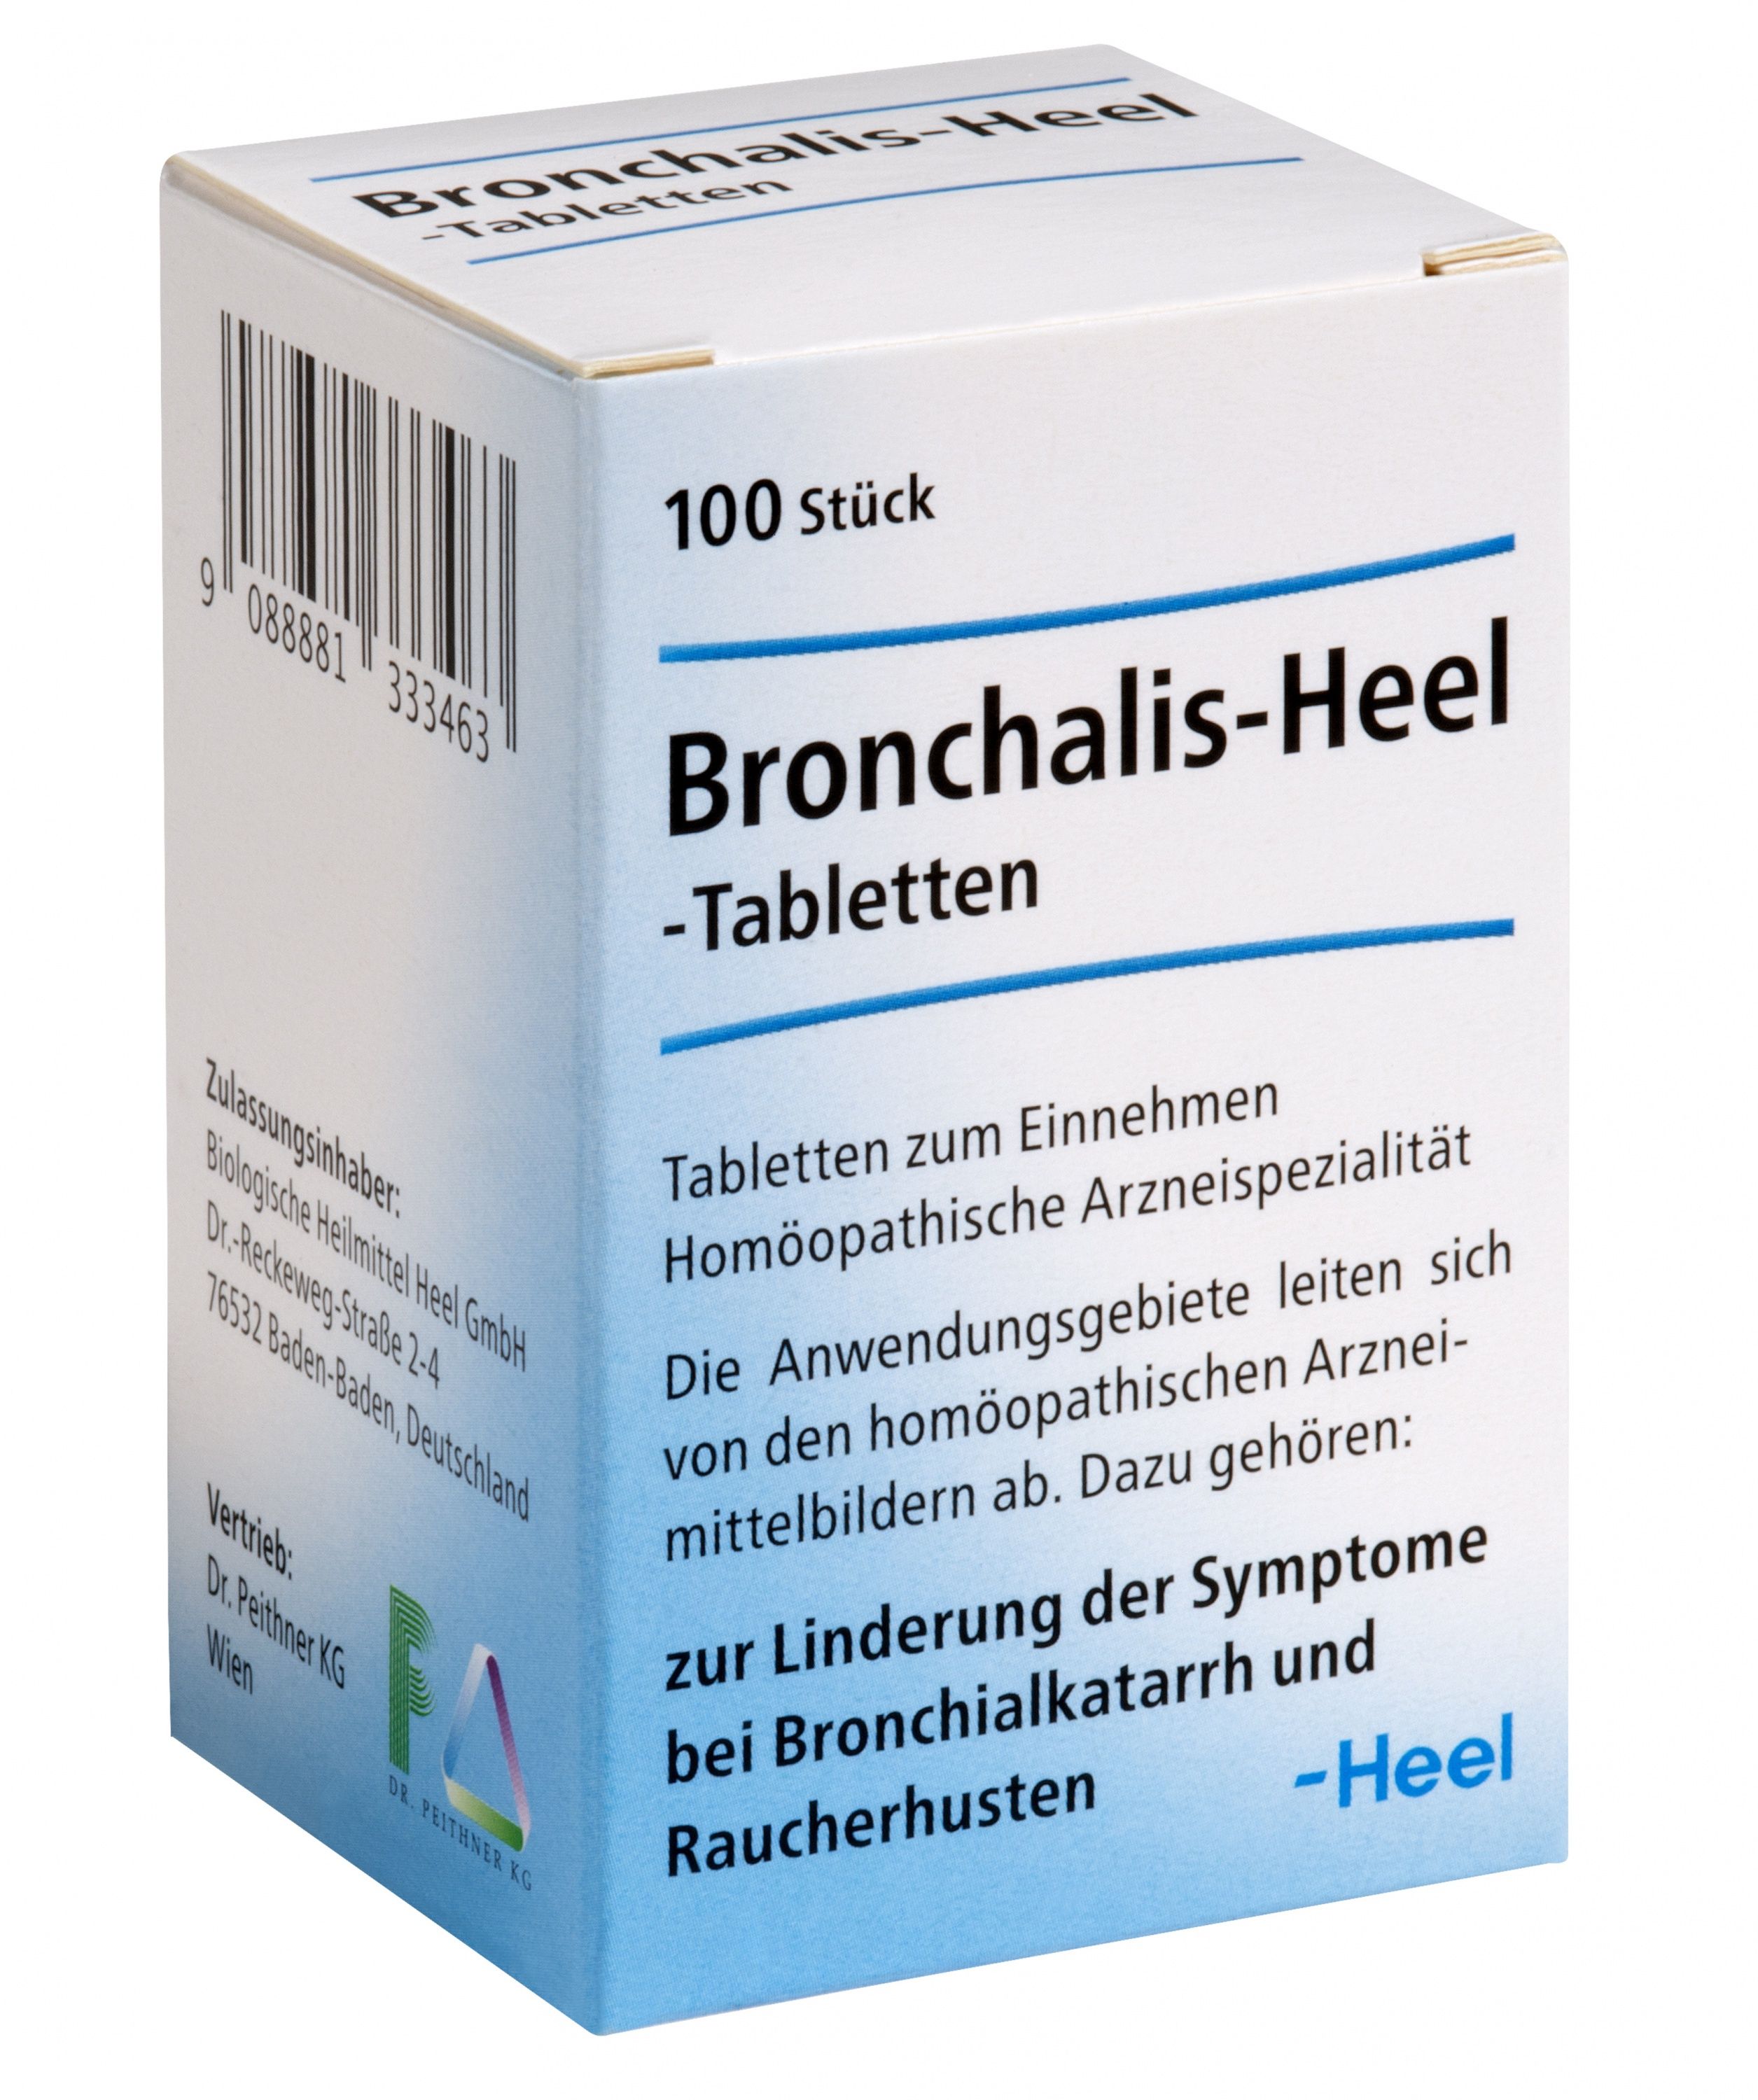 Abbildung Bronchalis-Heel-Tabletten